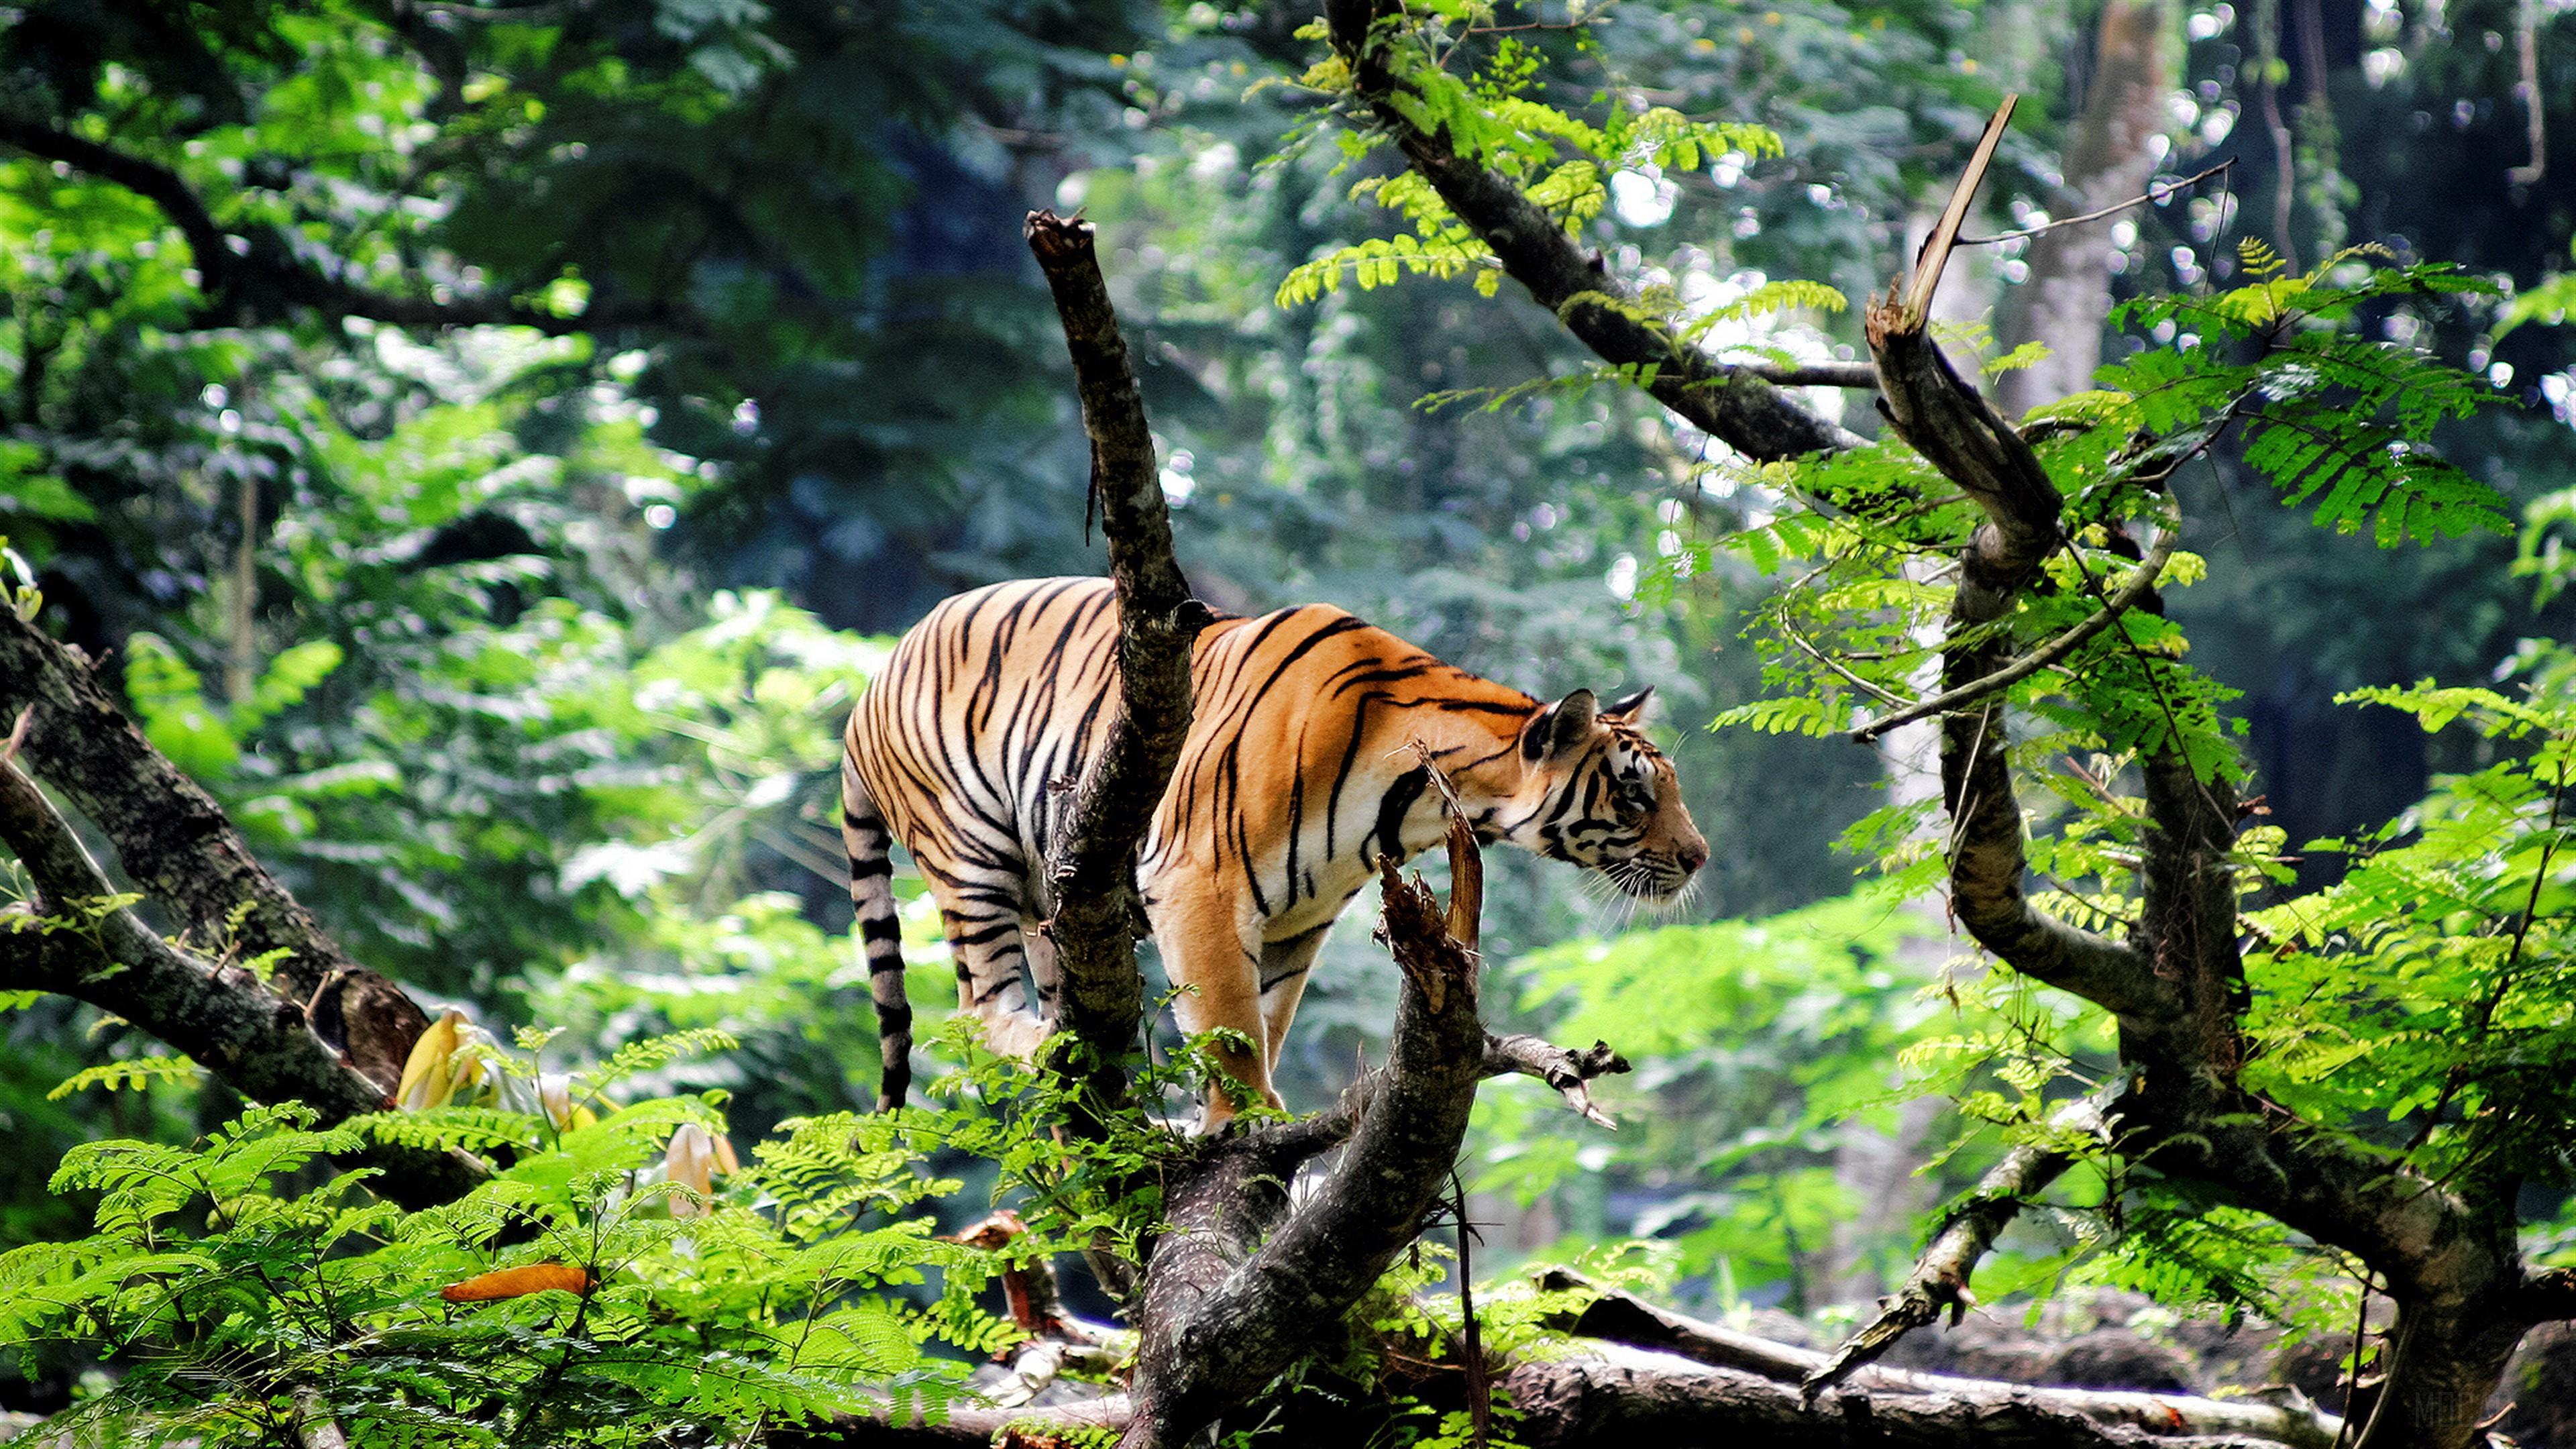 HD wallpaper, Bengal Tiger In Jungle 4K